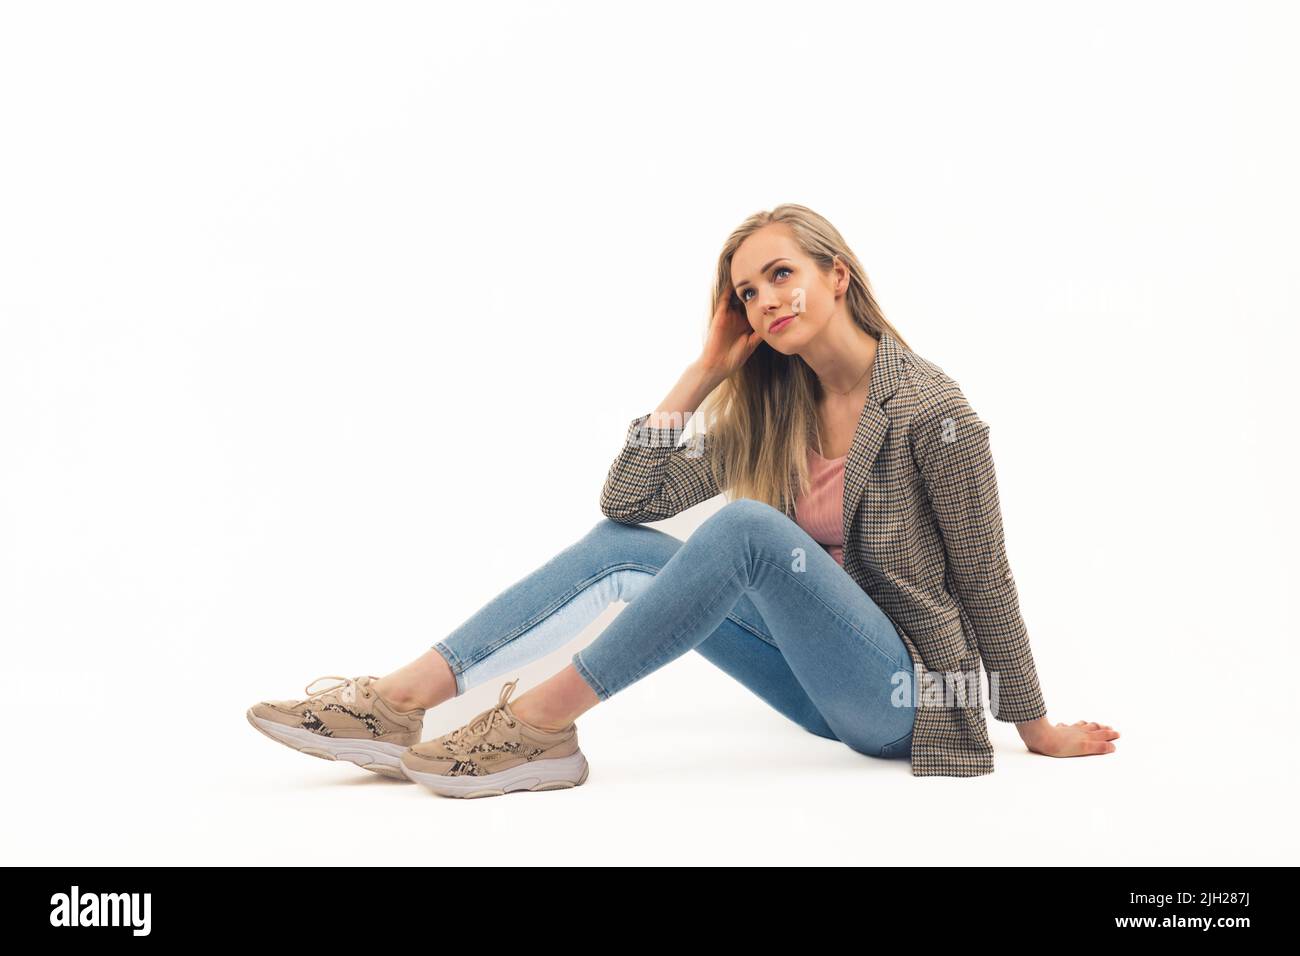 Giovane donna bionda adulta vestita in jeans e blazer controllato seduto a terra su sfondo bianco e guardando in su con un sorriso morbido. Foto studio dello spazio di copia isolato. Foto di alta qualità Foto Stock